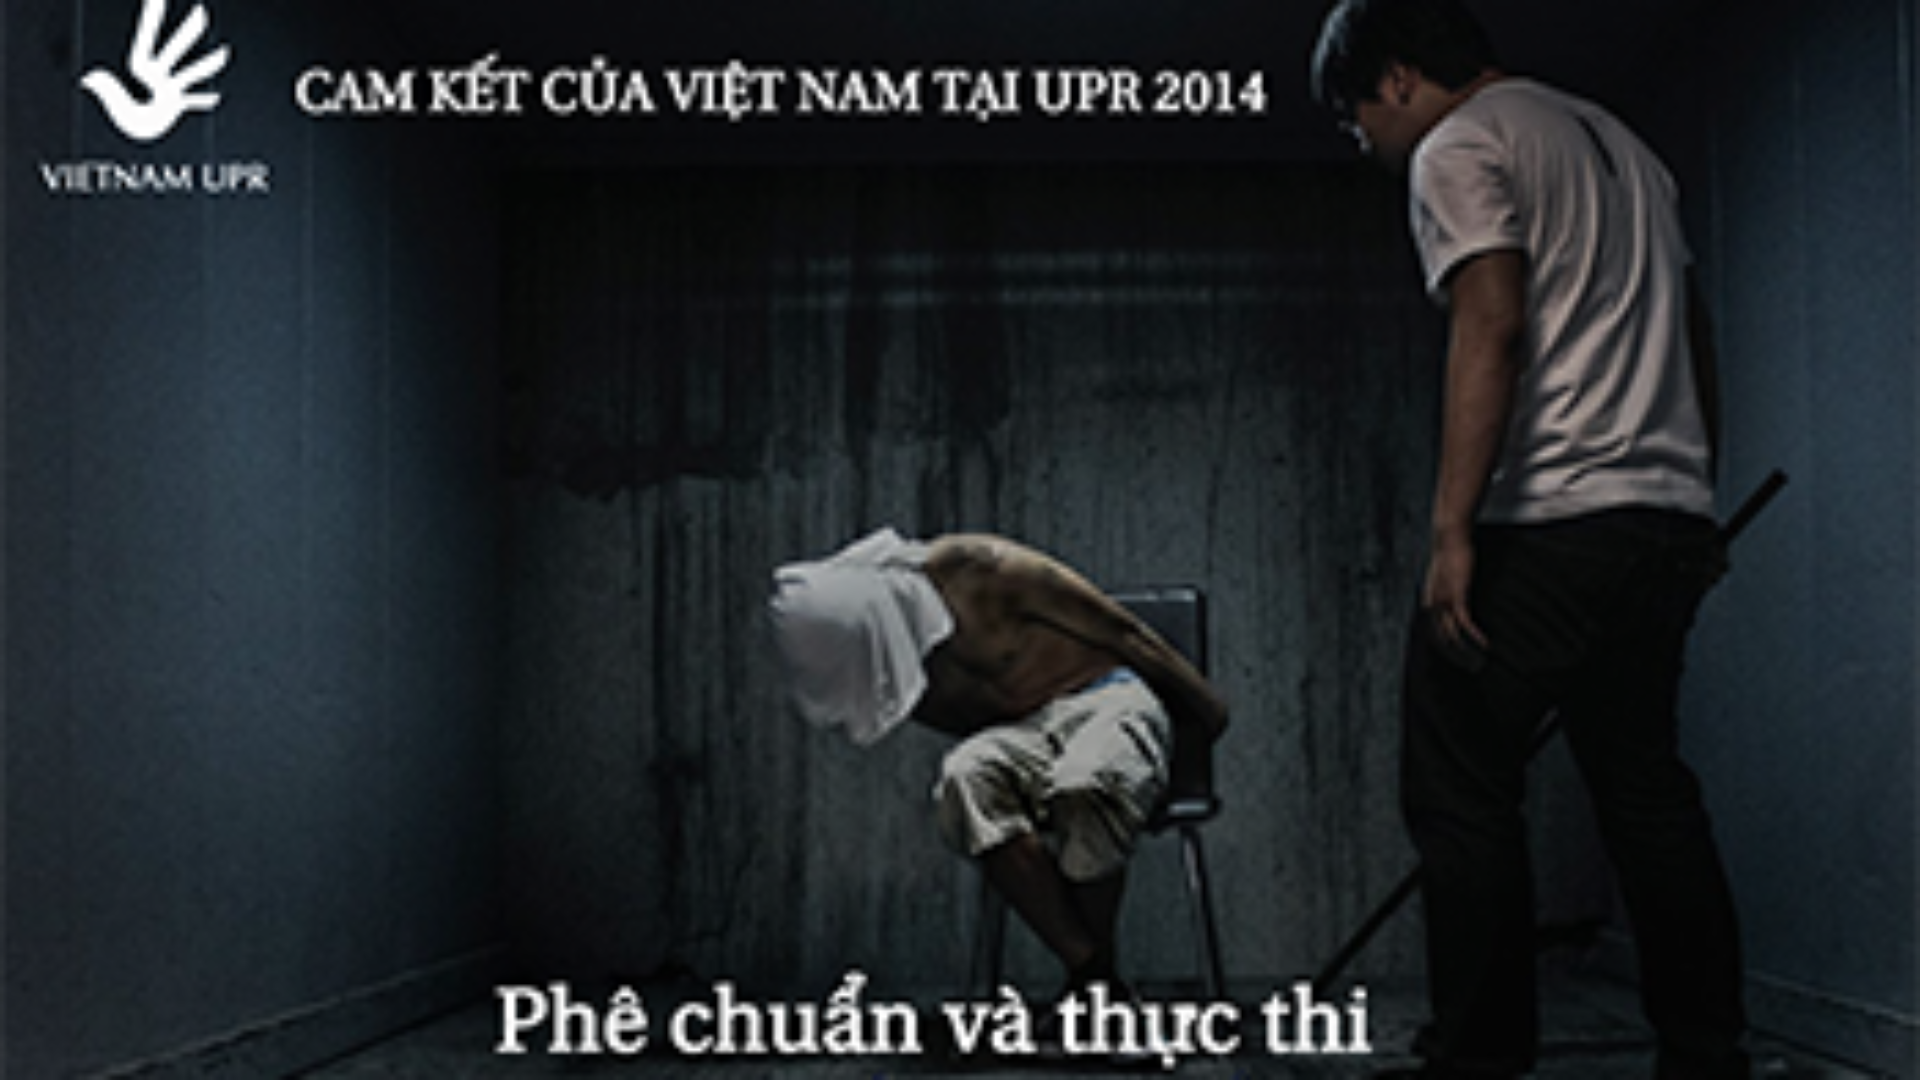 (Tiếng Việt) Bạn có biết: Việt Nam đã cam kết phê chuẩn và thực thi Công ước chống tra tấn tại UPR 2014?